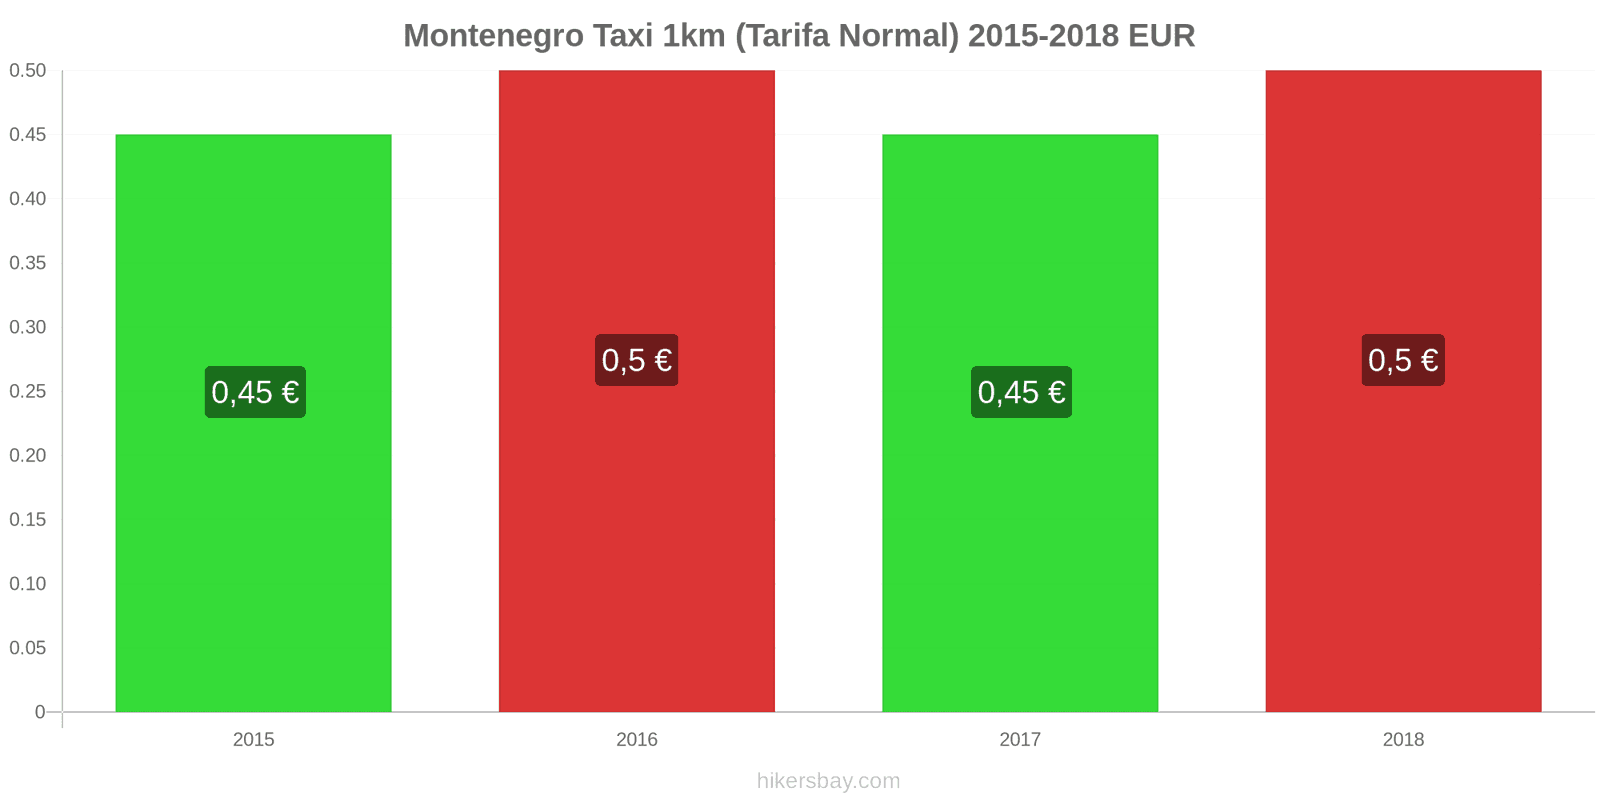 Montenegro cambios de precios Taxi 1km (tarifa normal) hikersbay.com